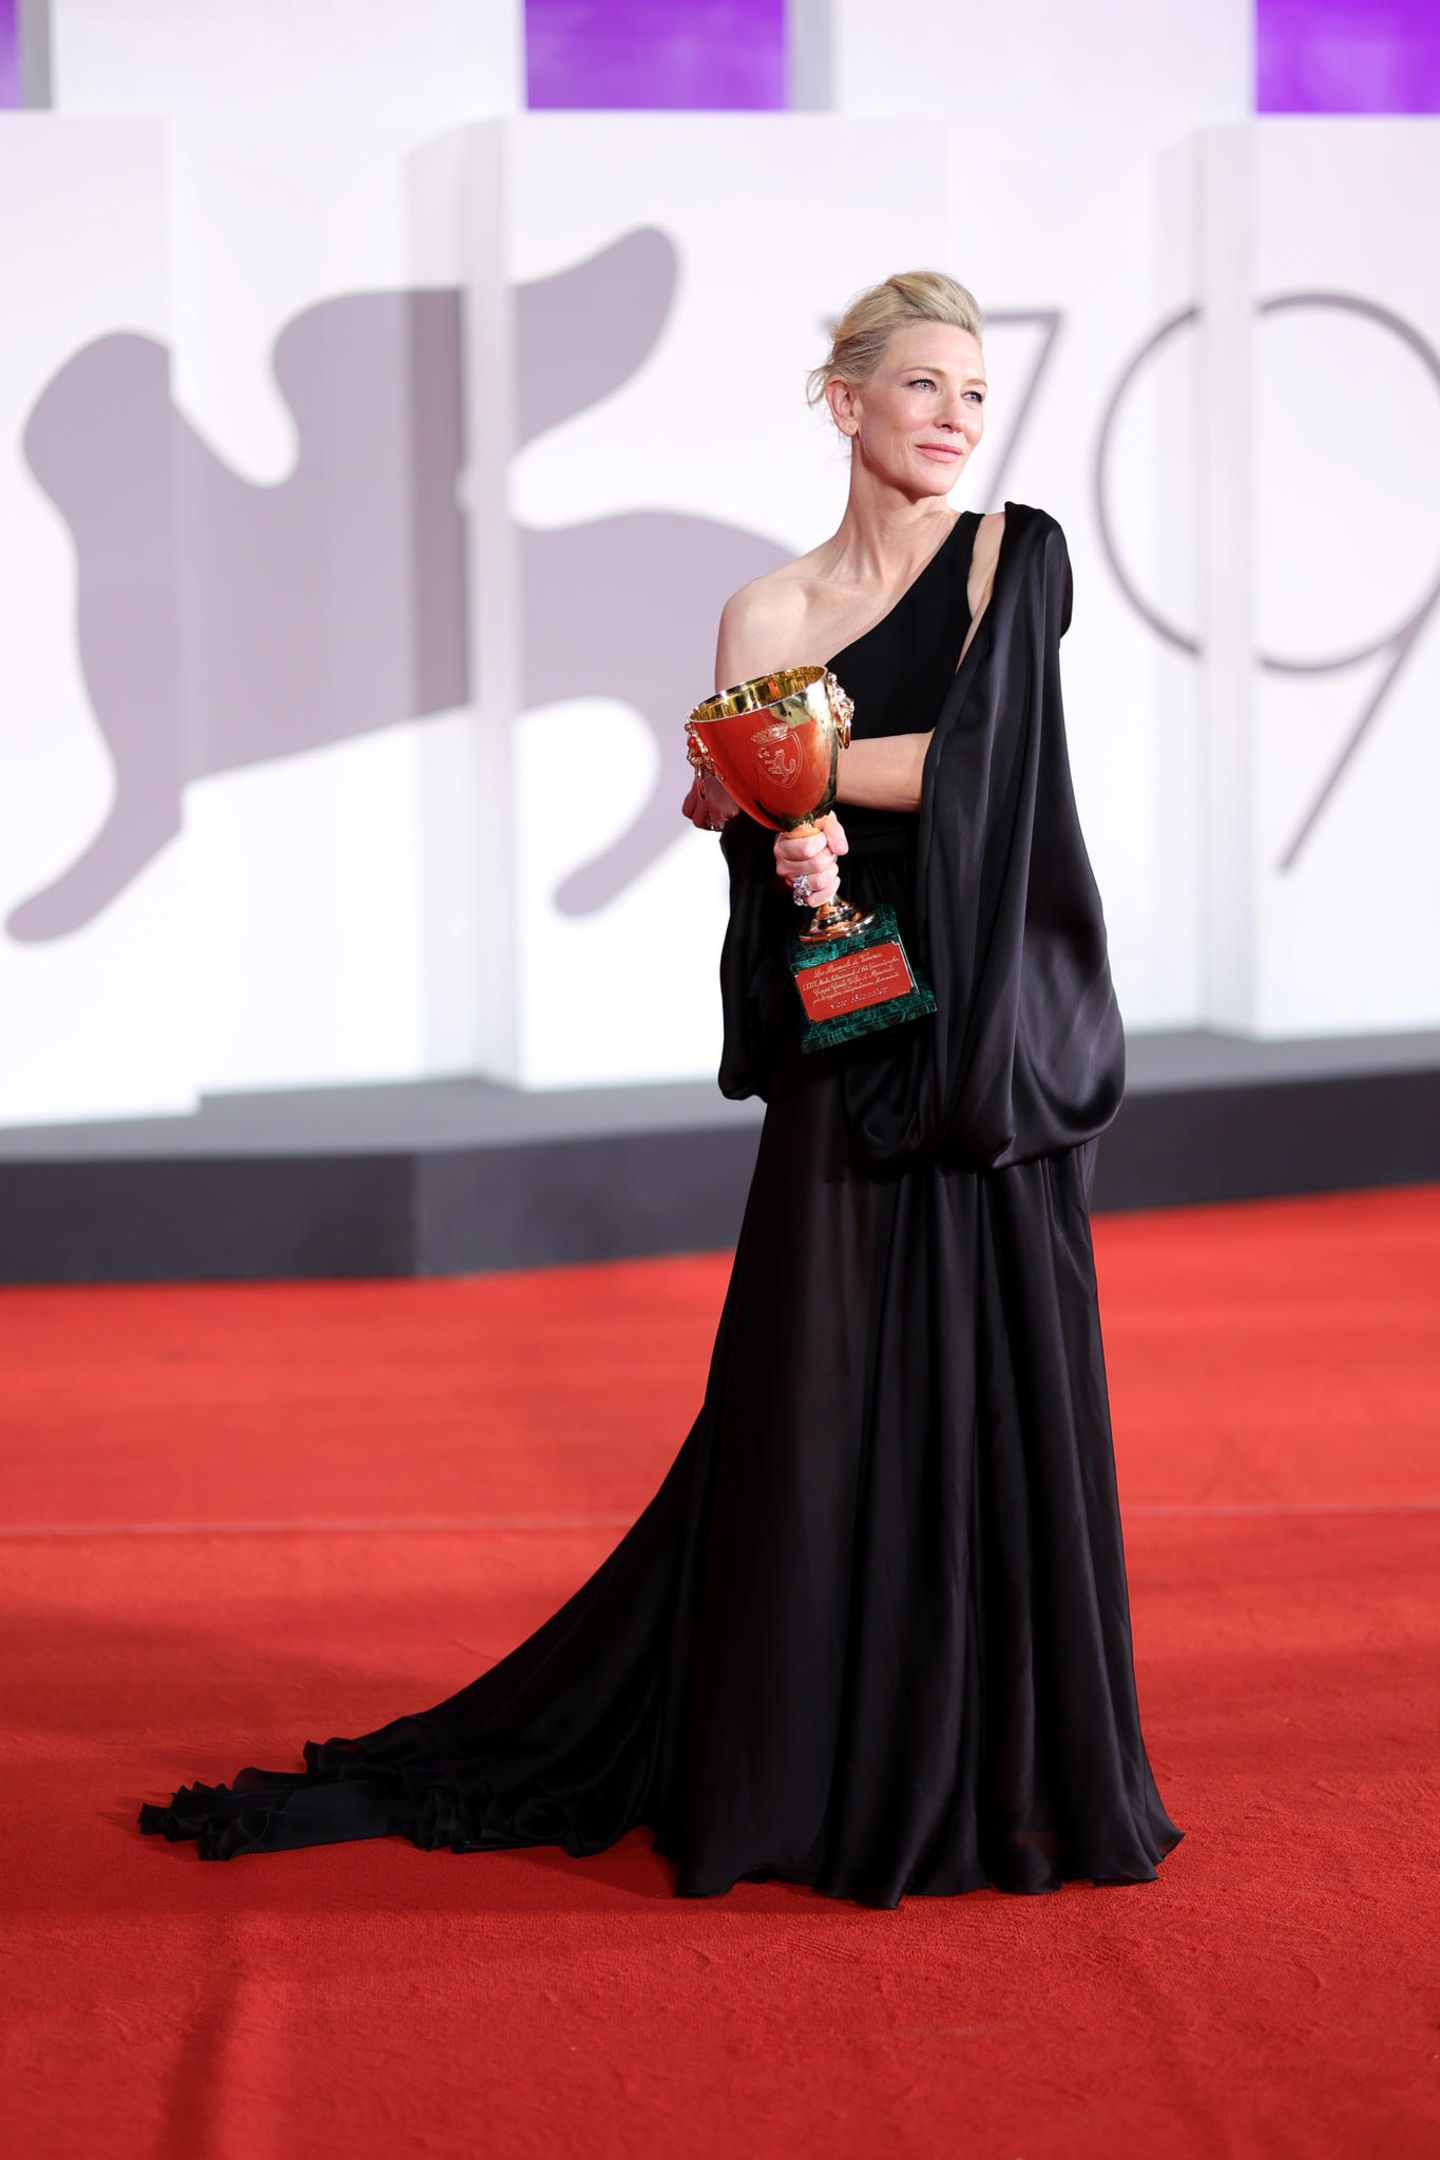 Auch die Stars bei den Filmfestspielen in Venedig drücken ihre Trauer um Queen Elizabeth aus. Cate Blanchett trägt ein schwarzes asymmetrisch geschnittenes Dress, um den "Coppa Volpi"-Preis in der Kategorie "Beste Schauspielerin" in ihrem Film "Tar" entgegenzunehmen.